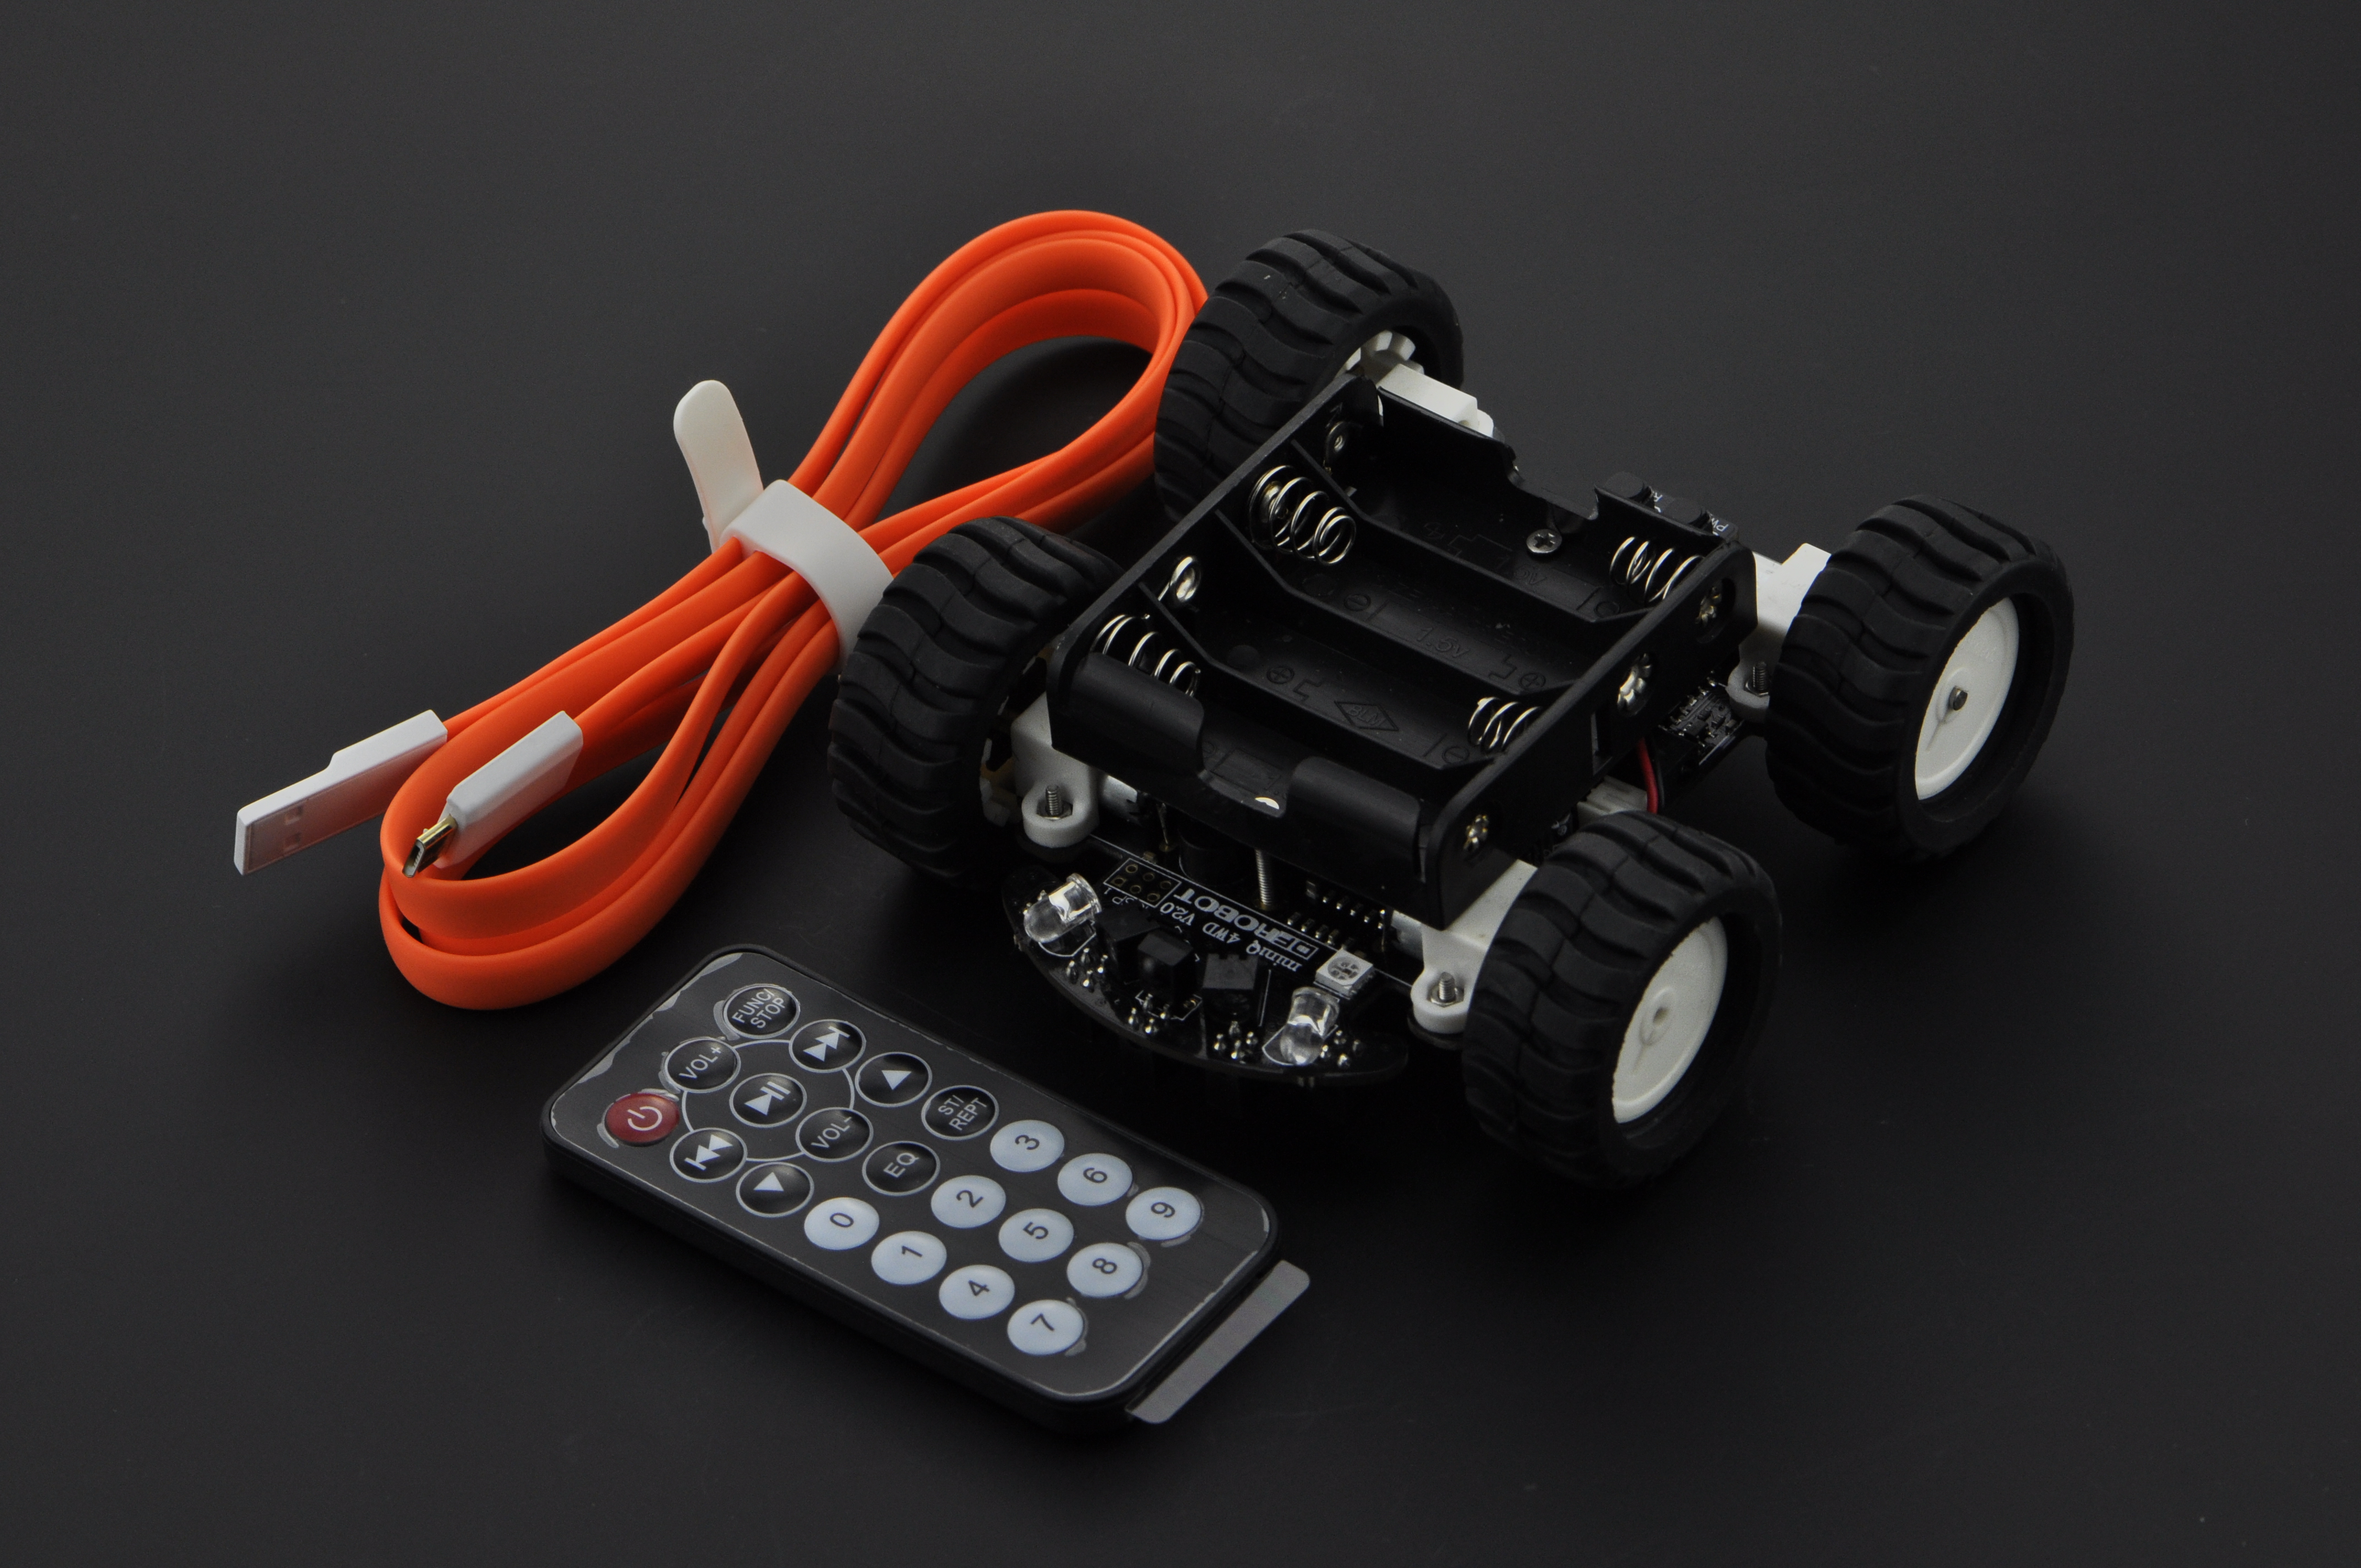 基于Arduino的miniQ 4WD 教育机器人平台(SKU:ROB0050)